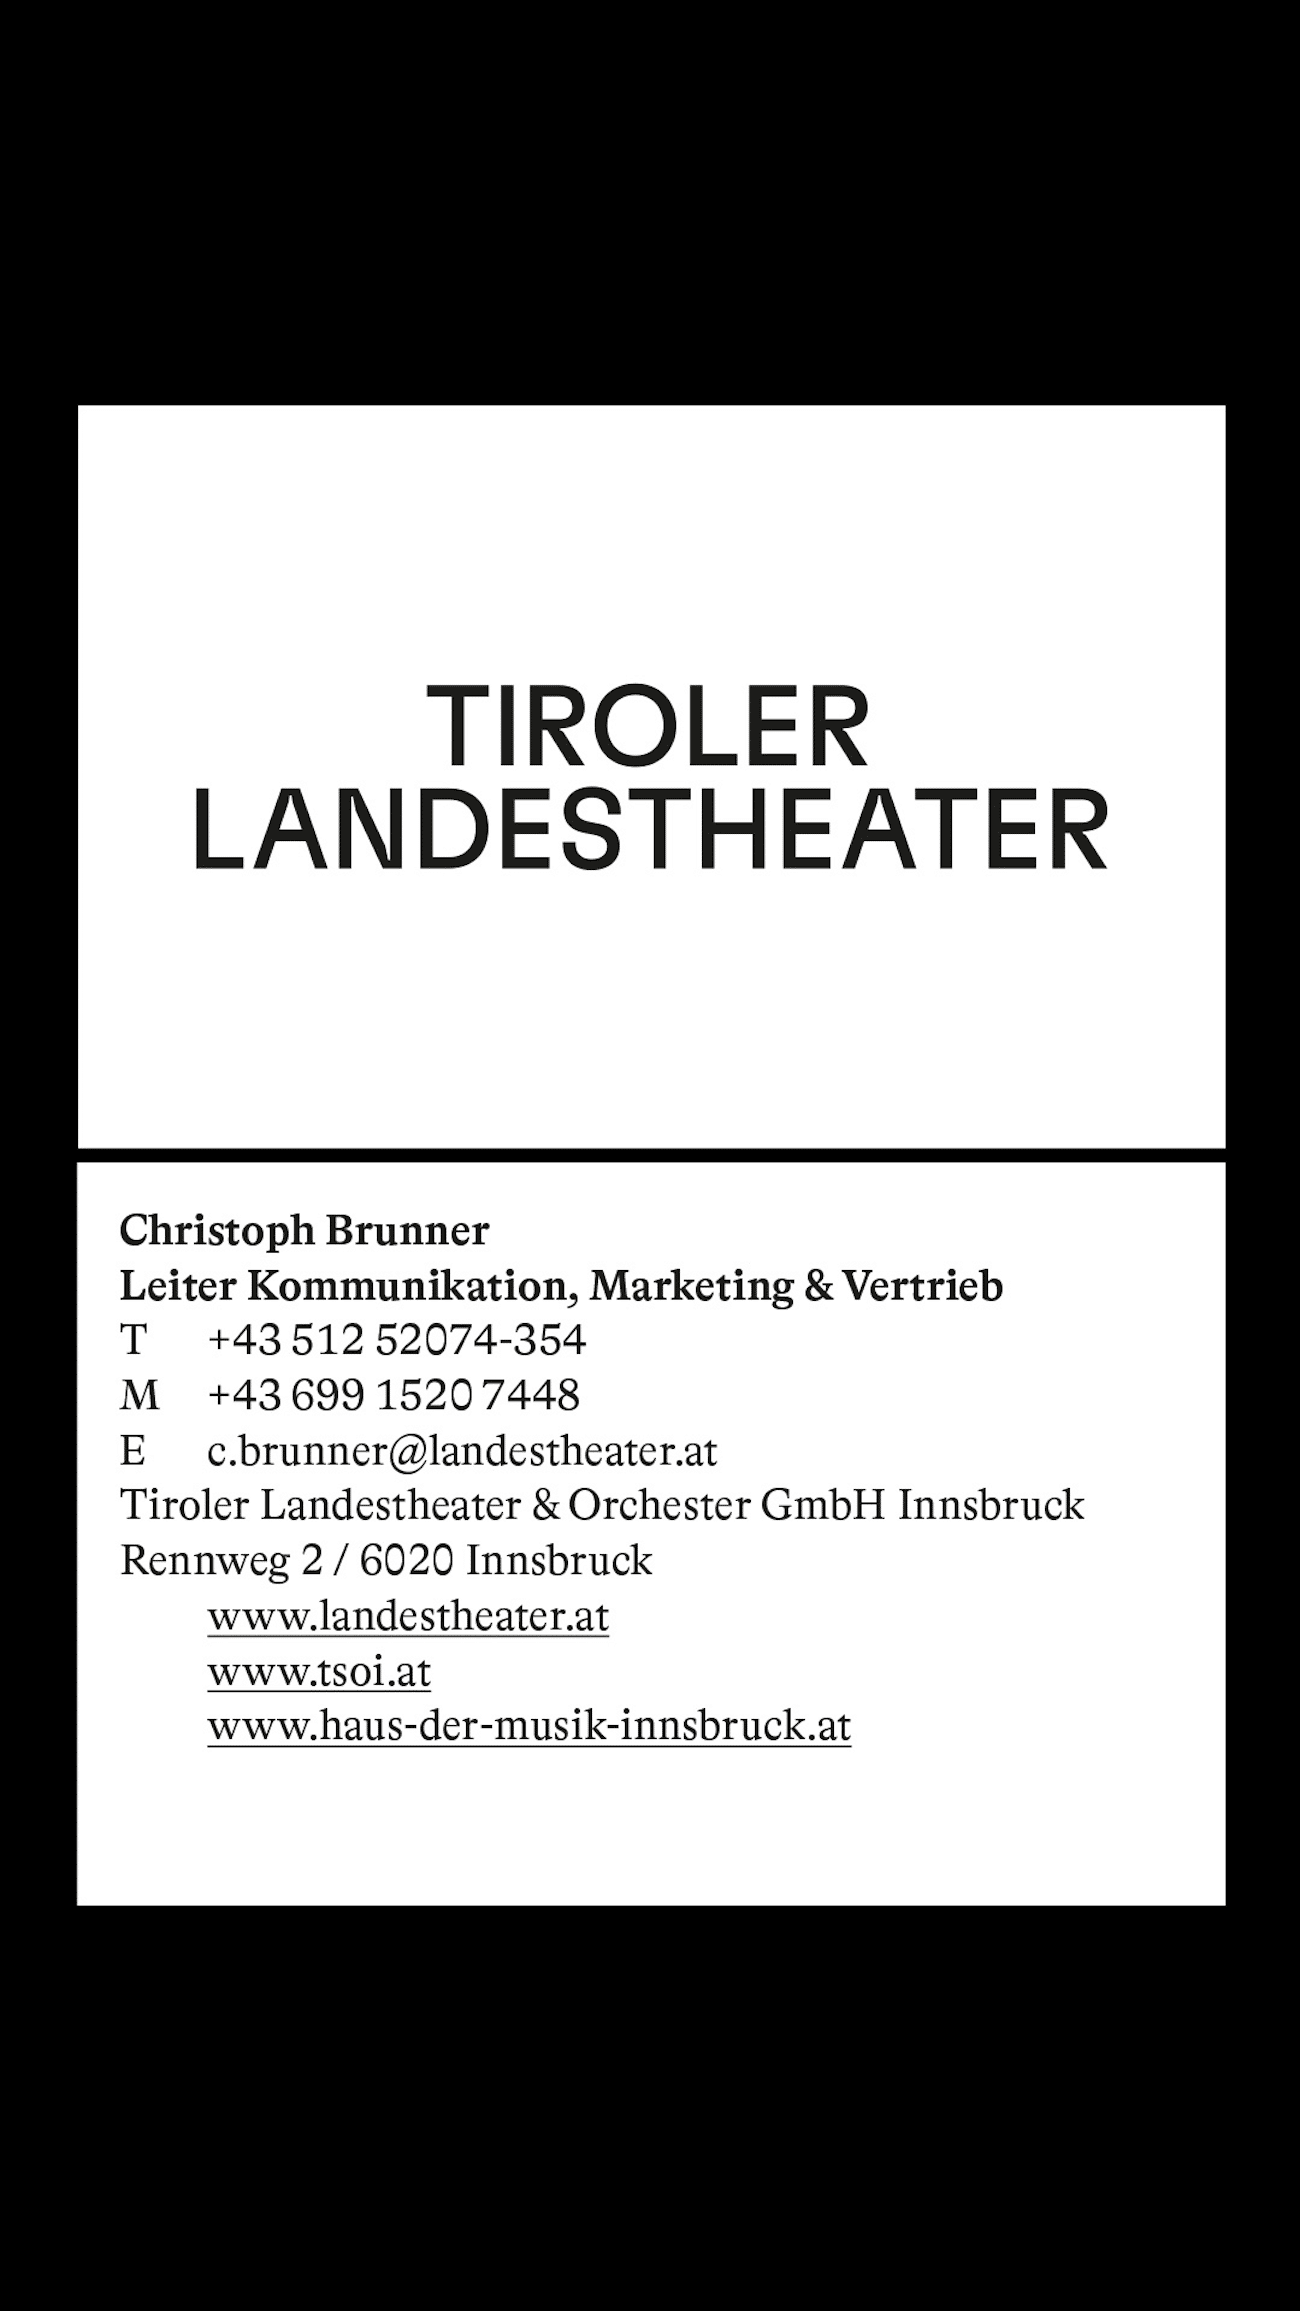 Corporate-Design_Tiroler-Landestheater_Visitenkartendesign-Spielzeit-2324_LWZ